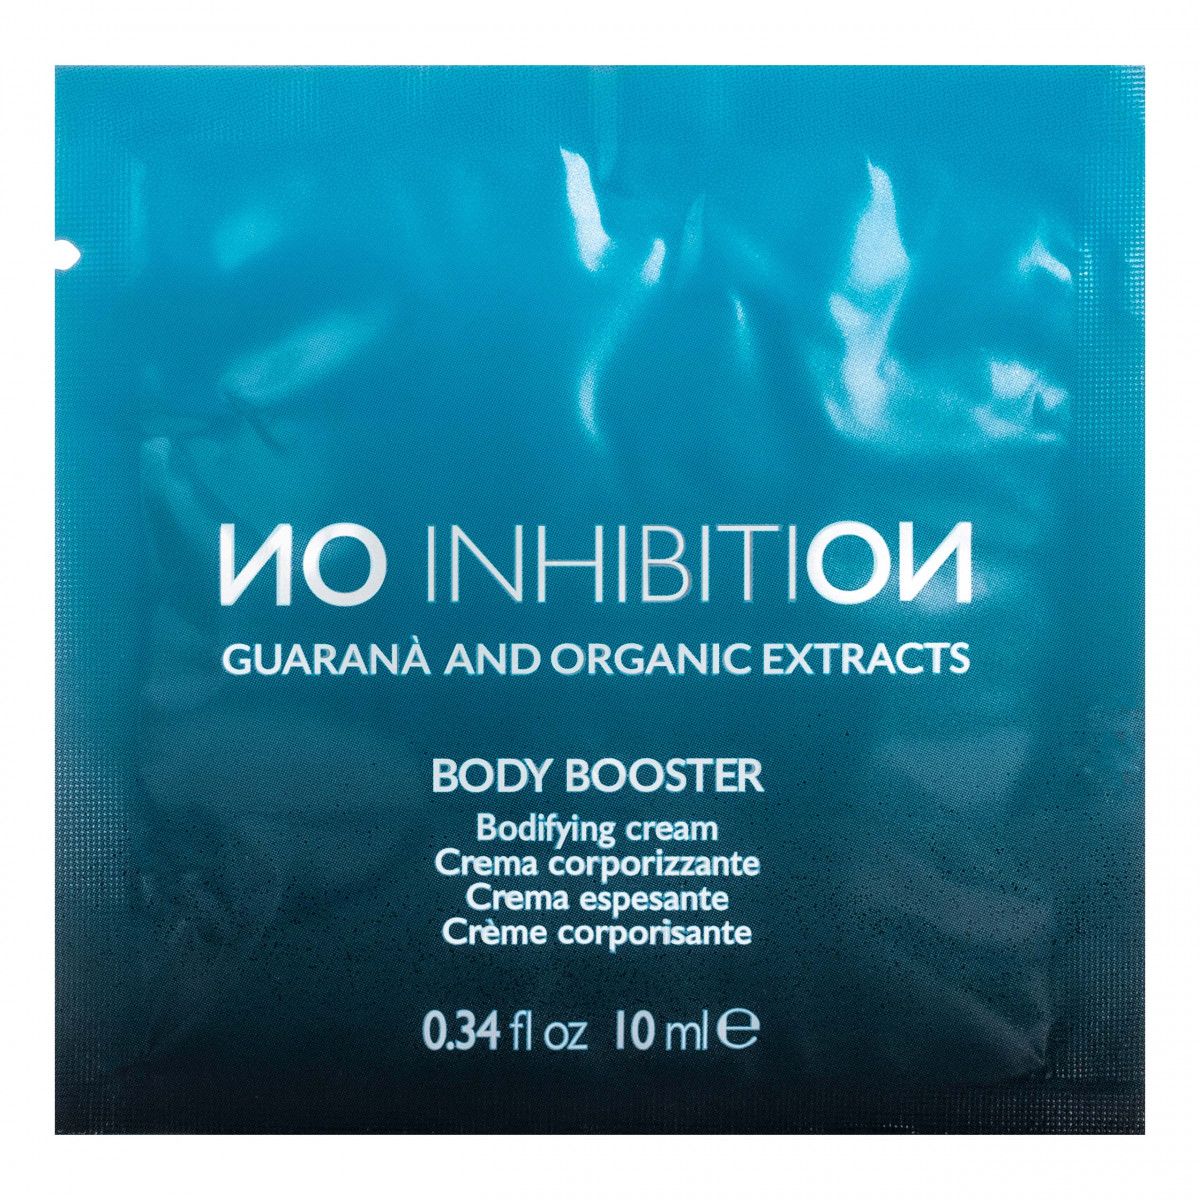 No Inhibition Body Booster Cream – krem pogrubiający i dodający włosom objętości, 10 ml